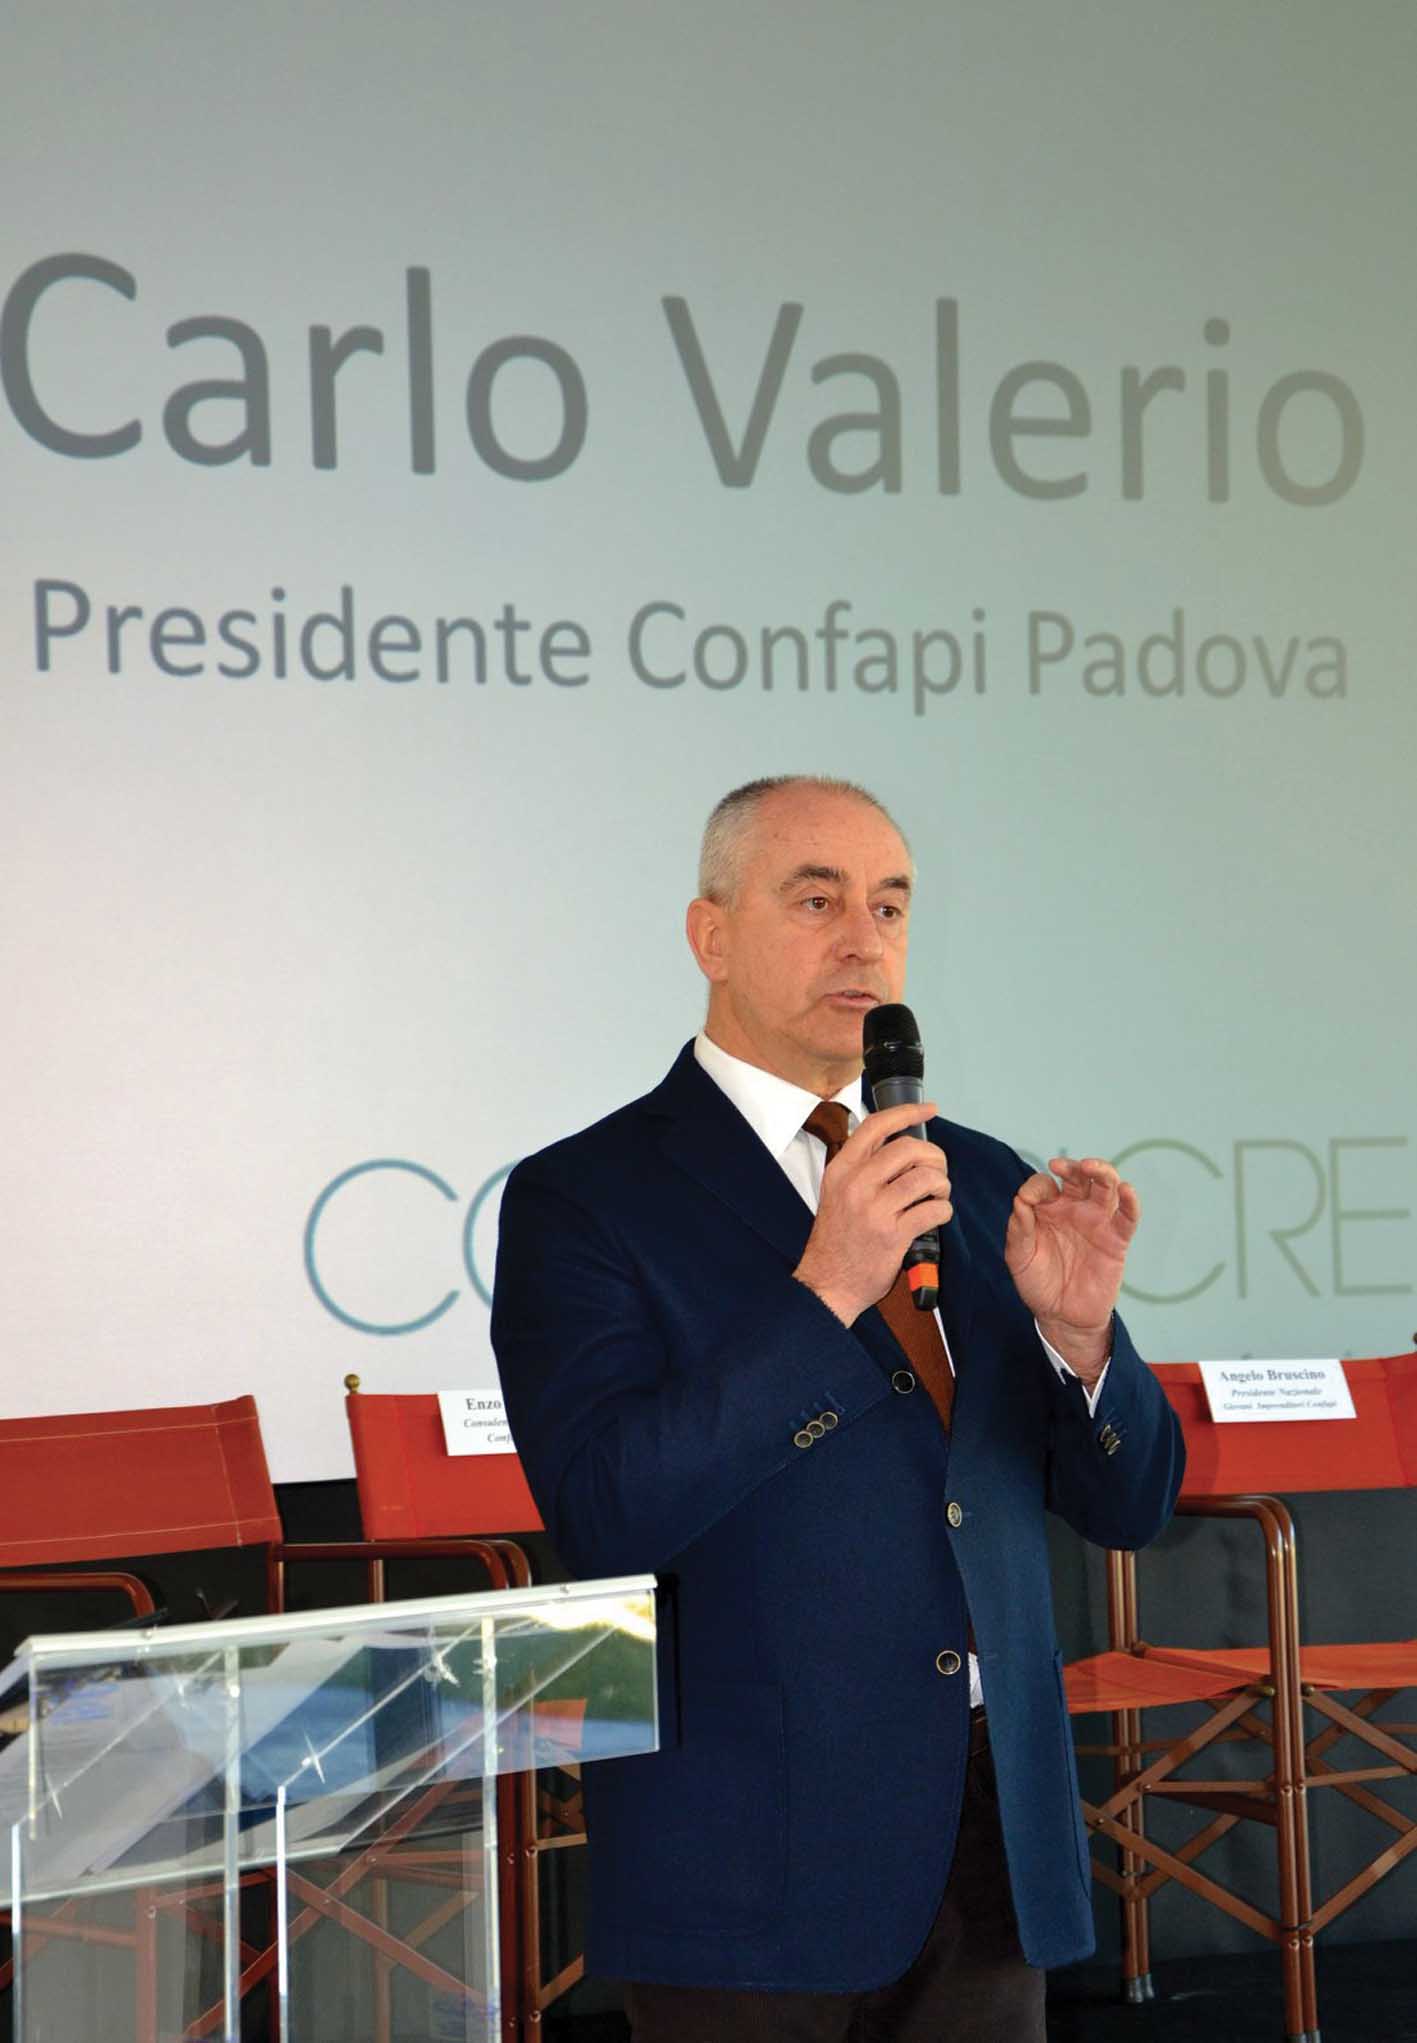 Carlo Valerio presidente confapi padova